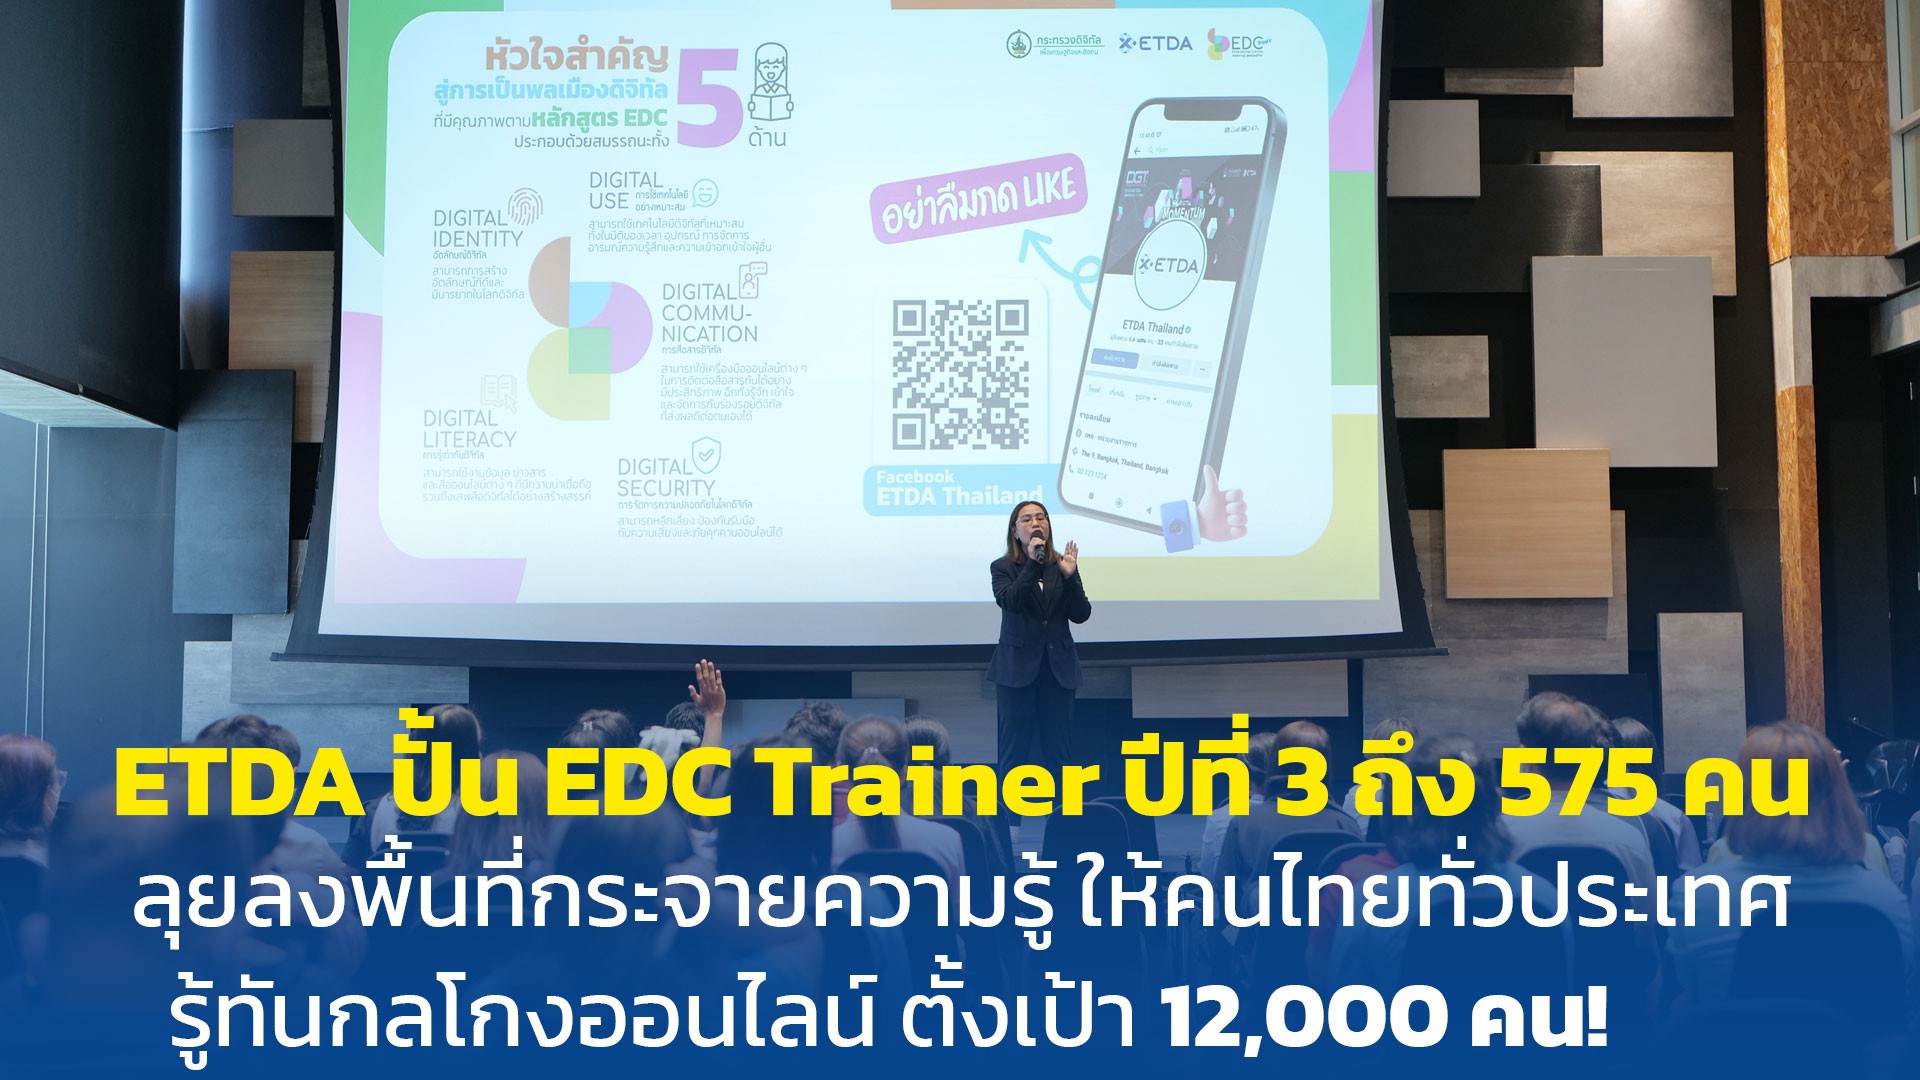 ETDA ปั้น EDC Trainer ปีที่ 3 ถึง 575 คน ลุยลงพื้นที่กระจายความรู้ สู่คนไทย ทั่วประเทศ รู้ทันกลโกงออนไลน์ ตั้งเป้า 12,000 คน